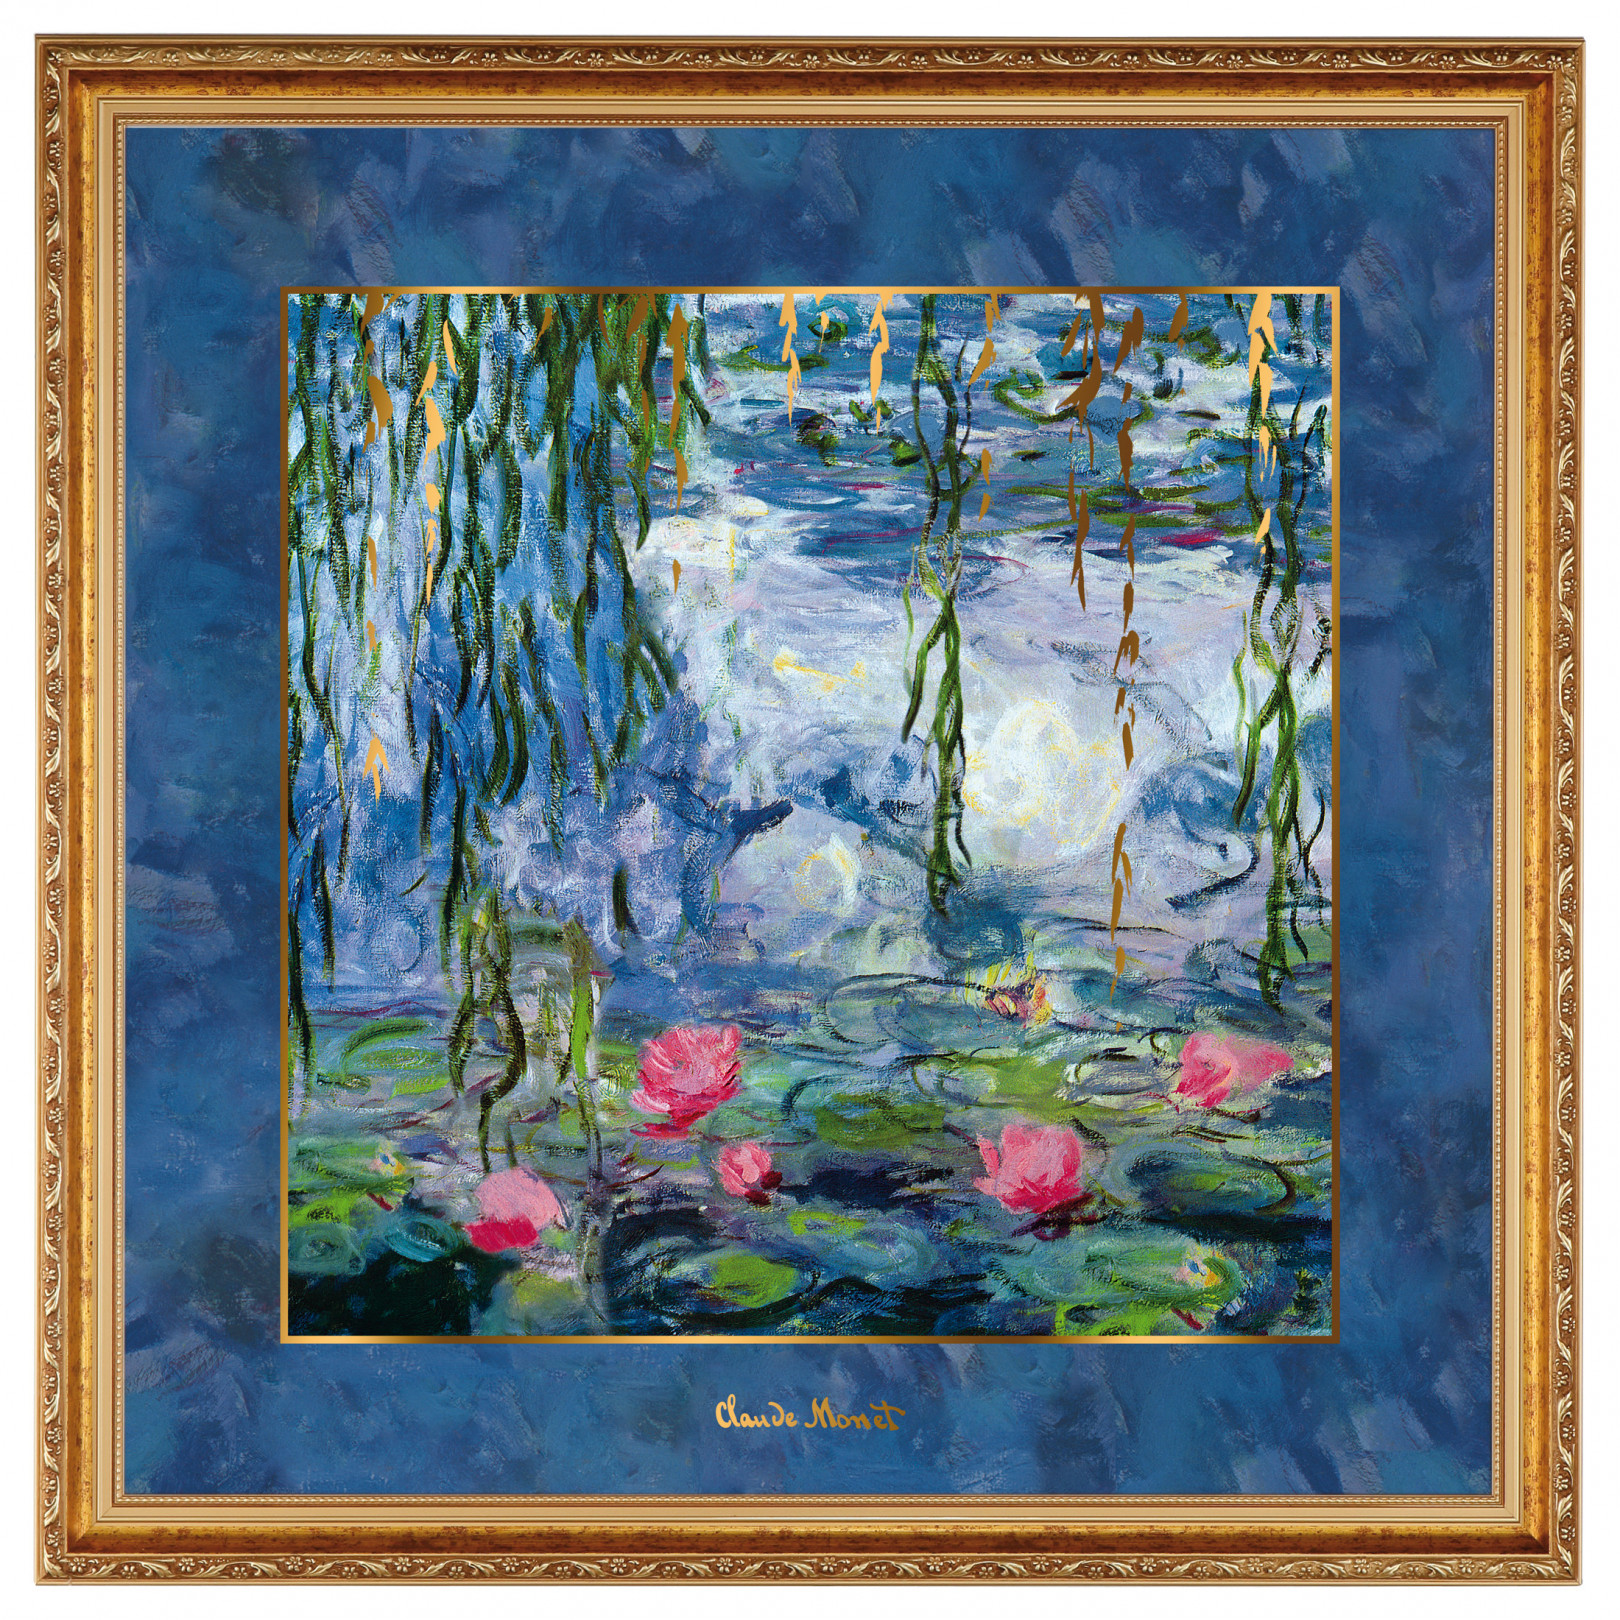 Obraz na porcelanie 68 cm C. Monet - Lilie wodne - Goebel